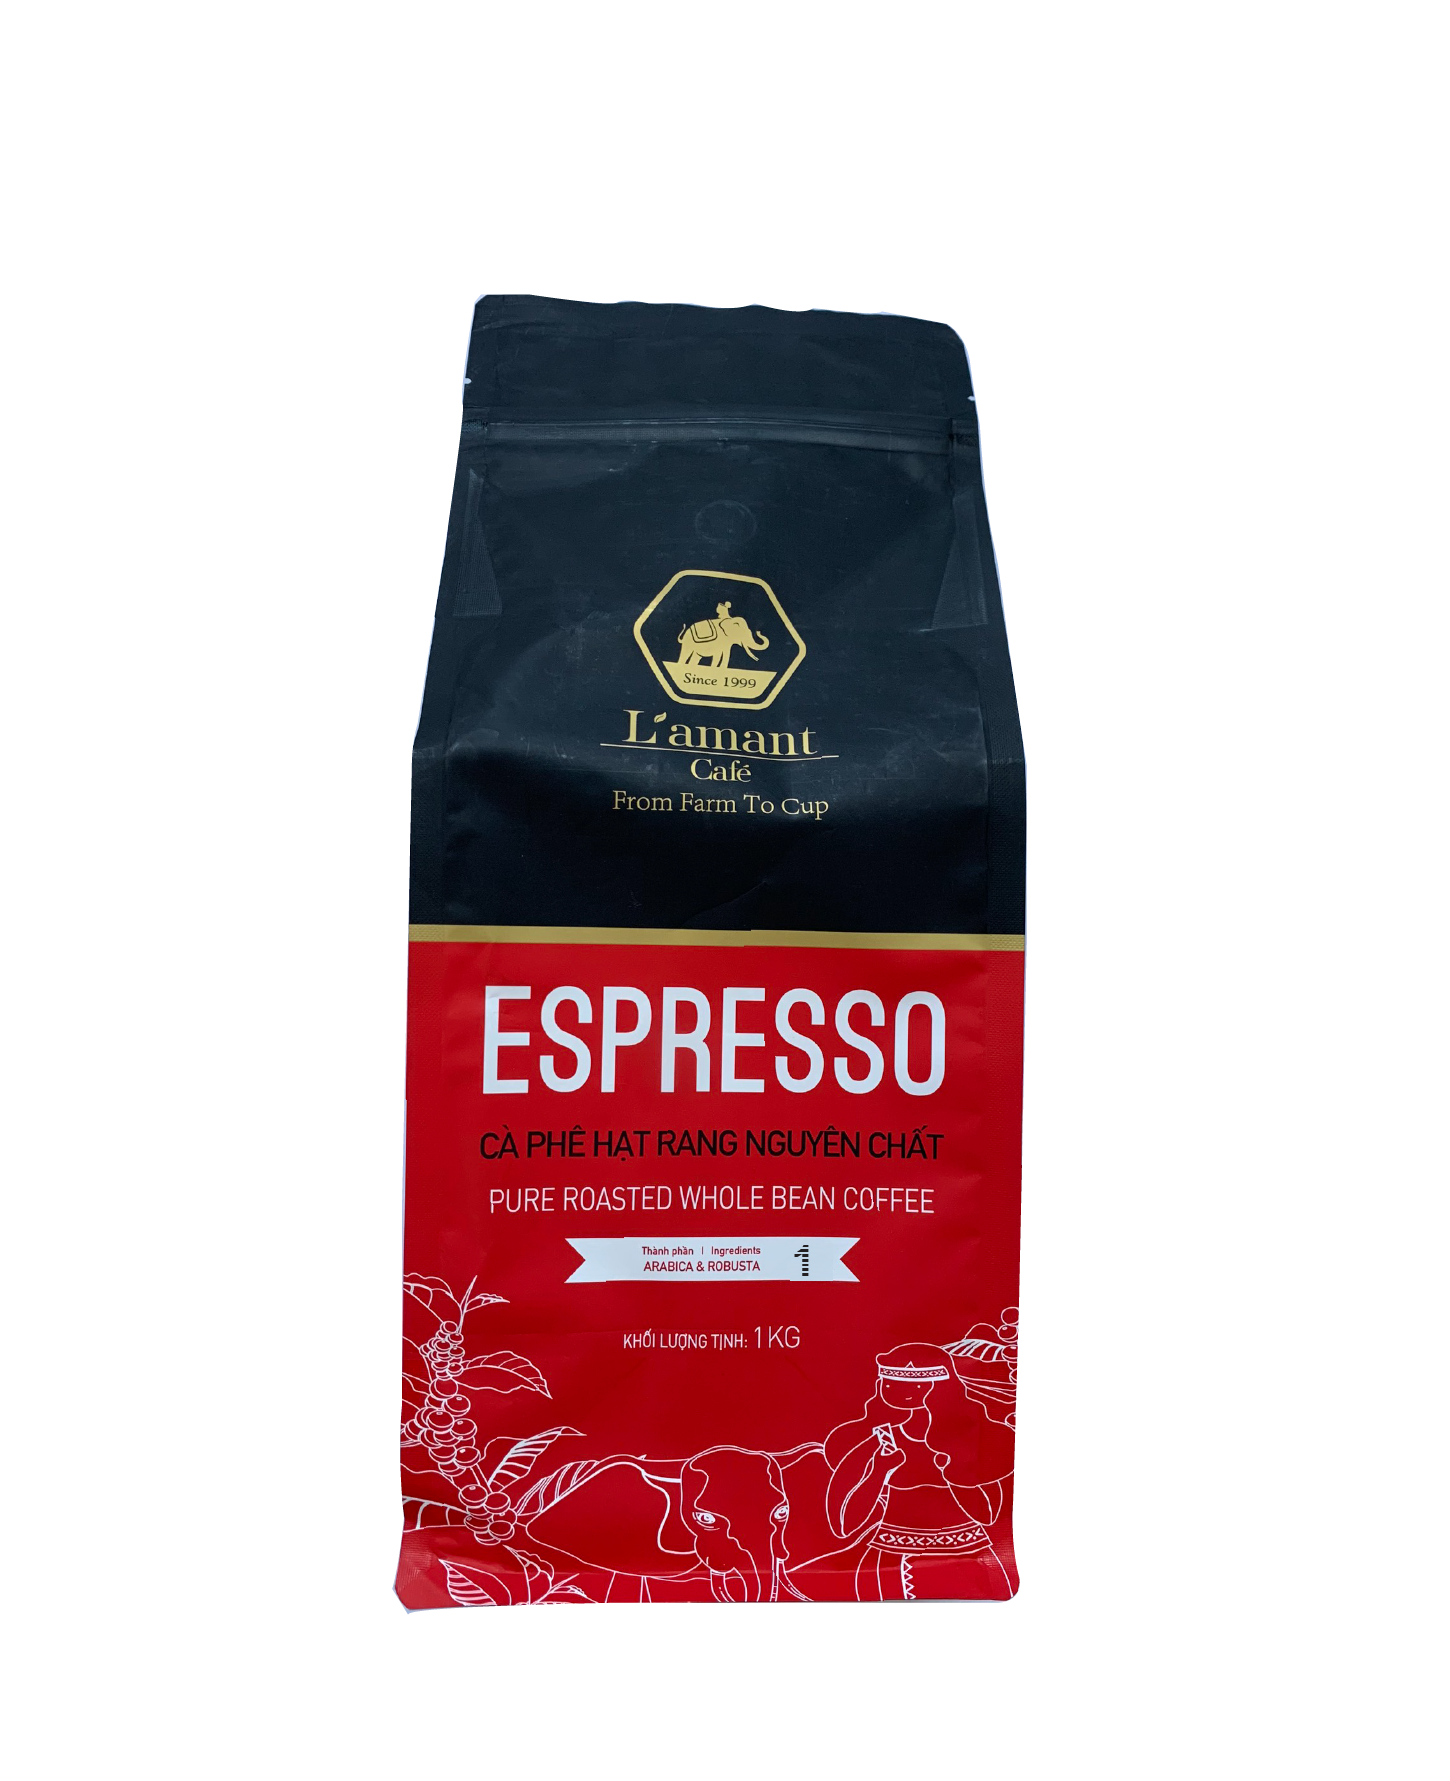  Cà phê hạt rang L’amant Espresso số 01 - L’amant No.01 Espresso Roasted Coffee 